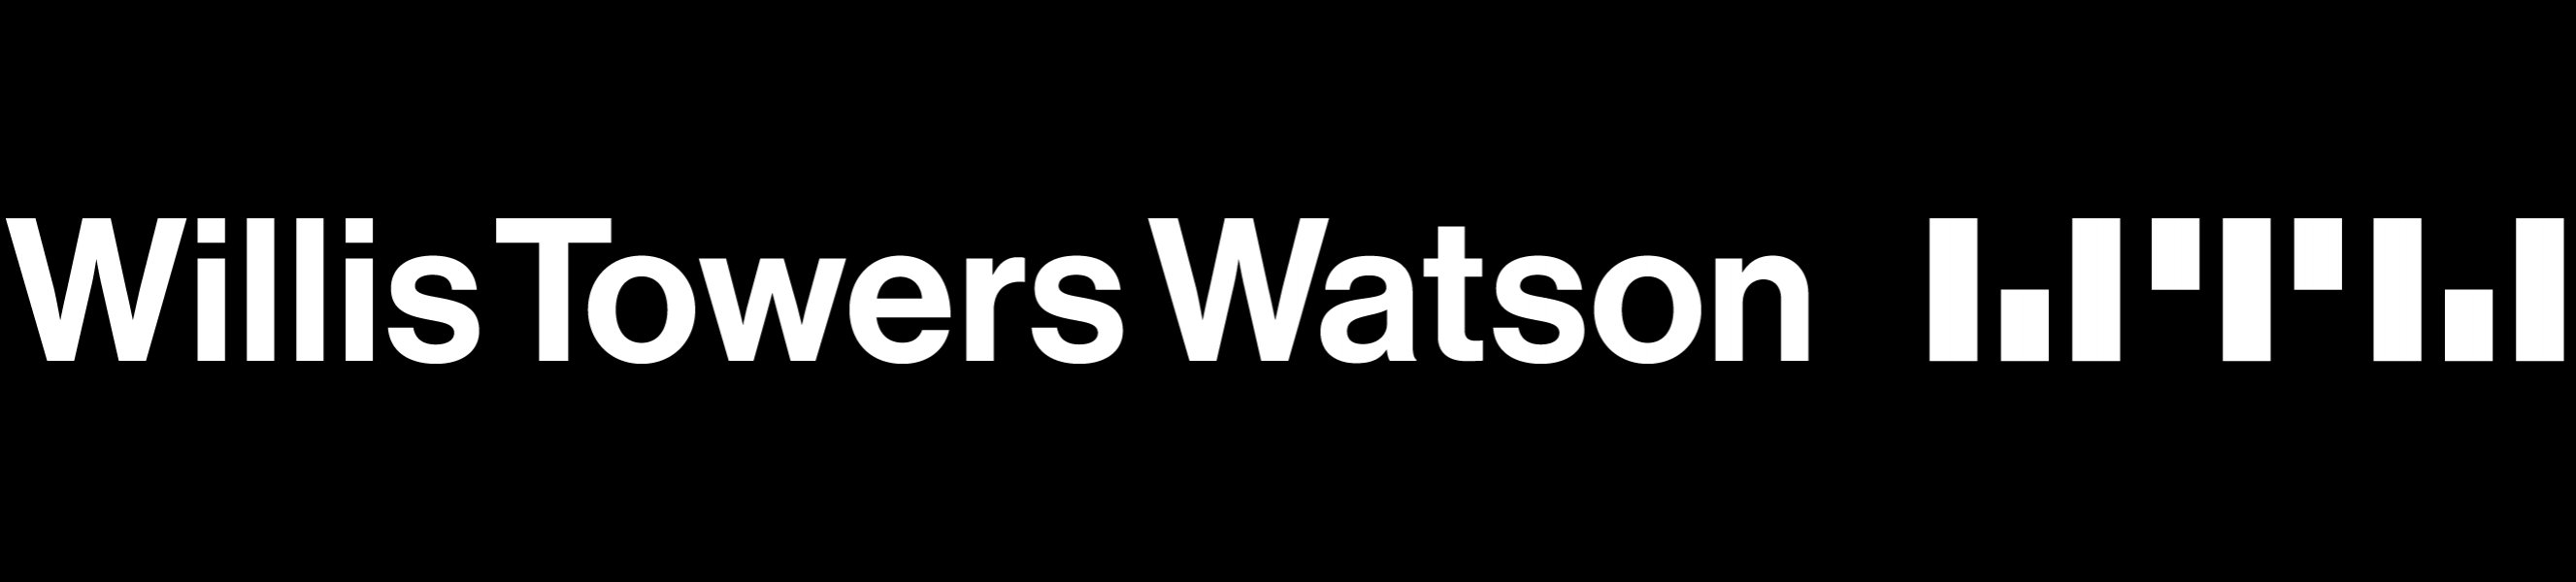 Willis Towers Watson Footer Logo